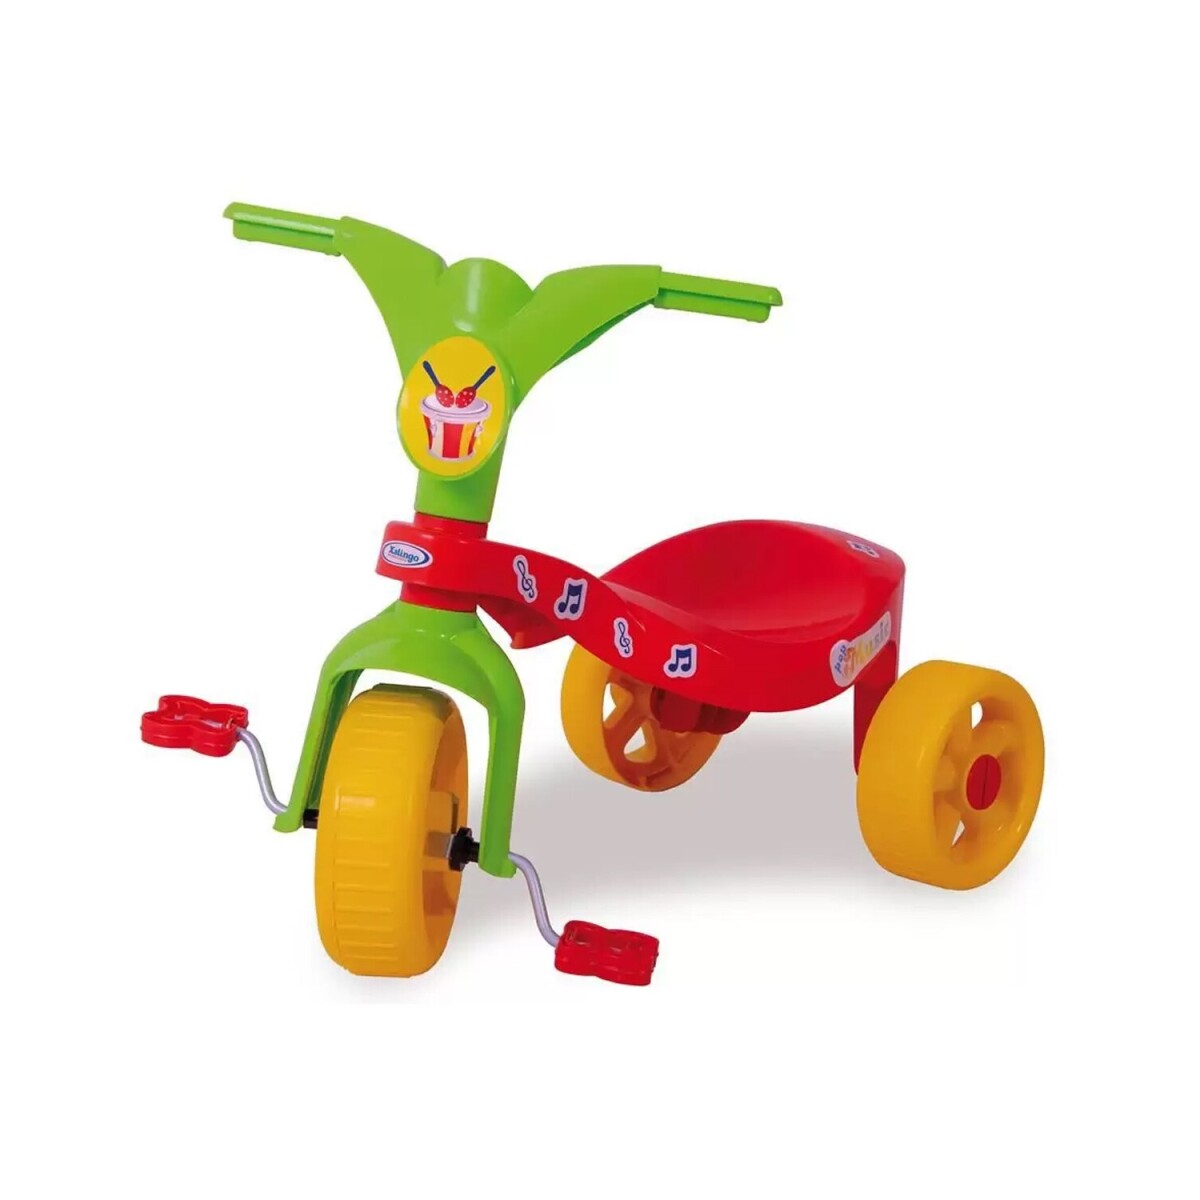 Triciclo de plástico con pedales diseño ergonómico - Rojo 